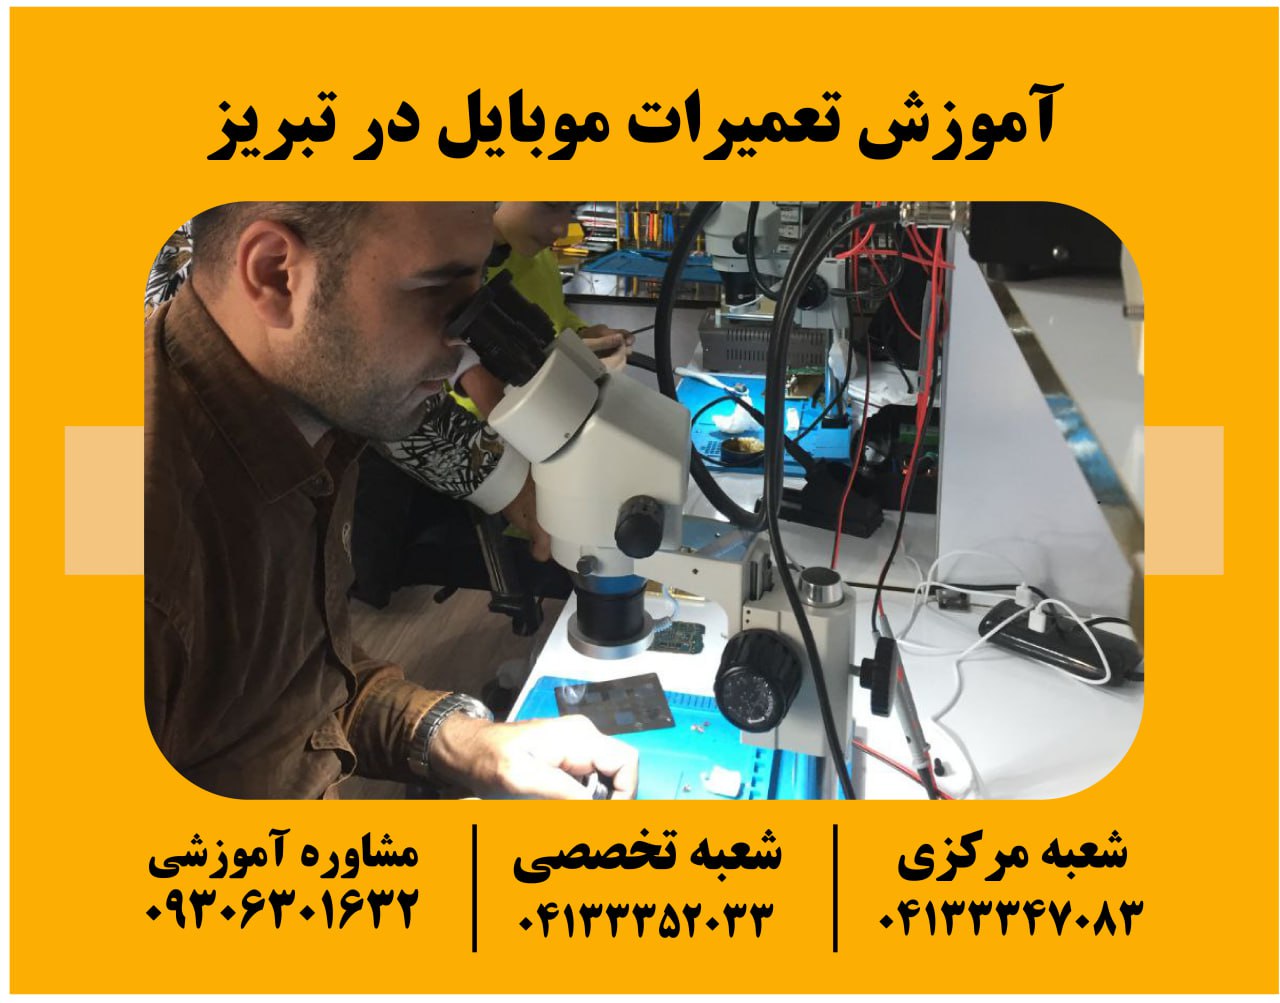 آموزش تعمیرات موبایل در تبریز به صورت تخصصی